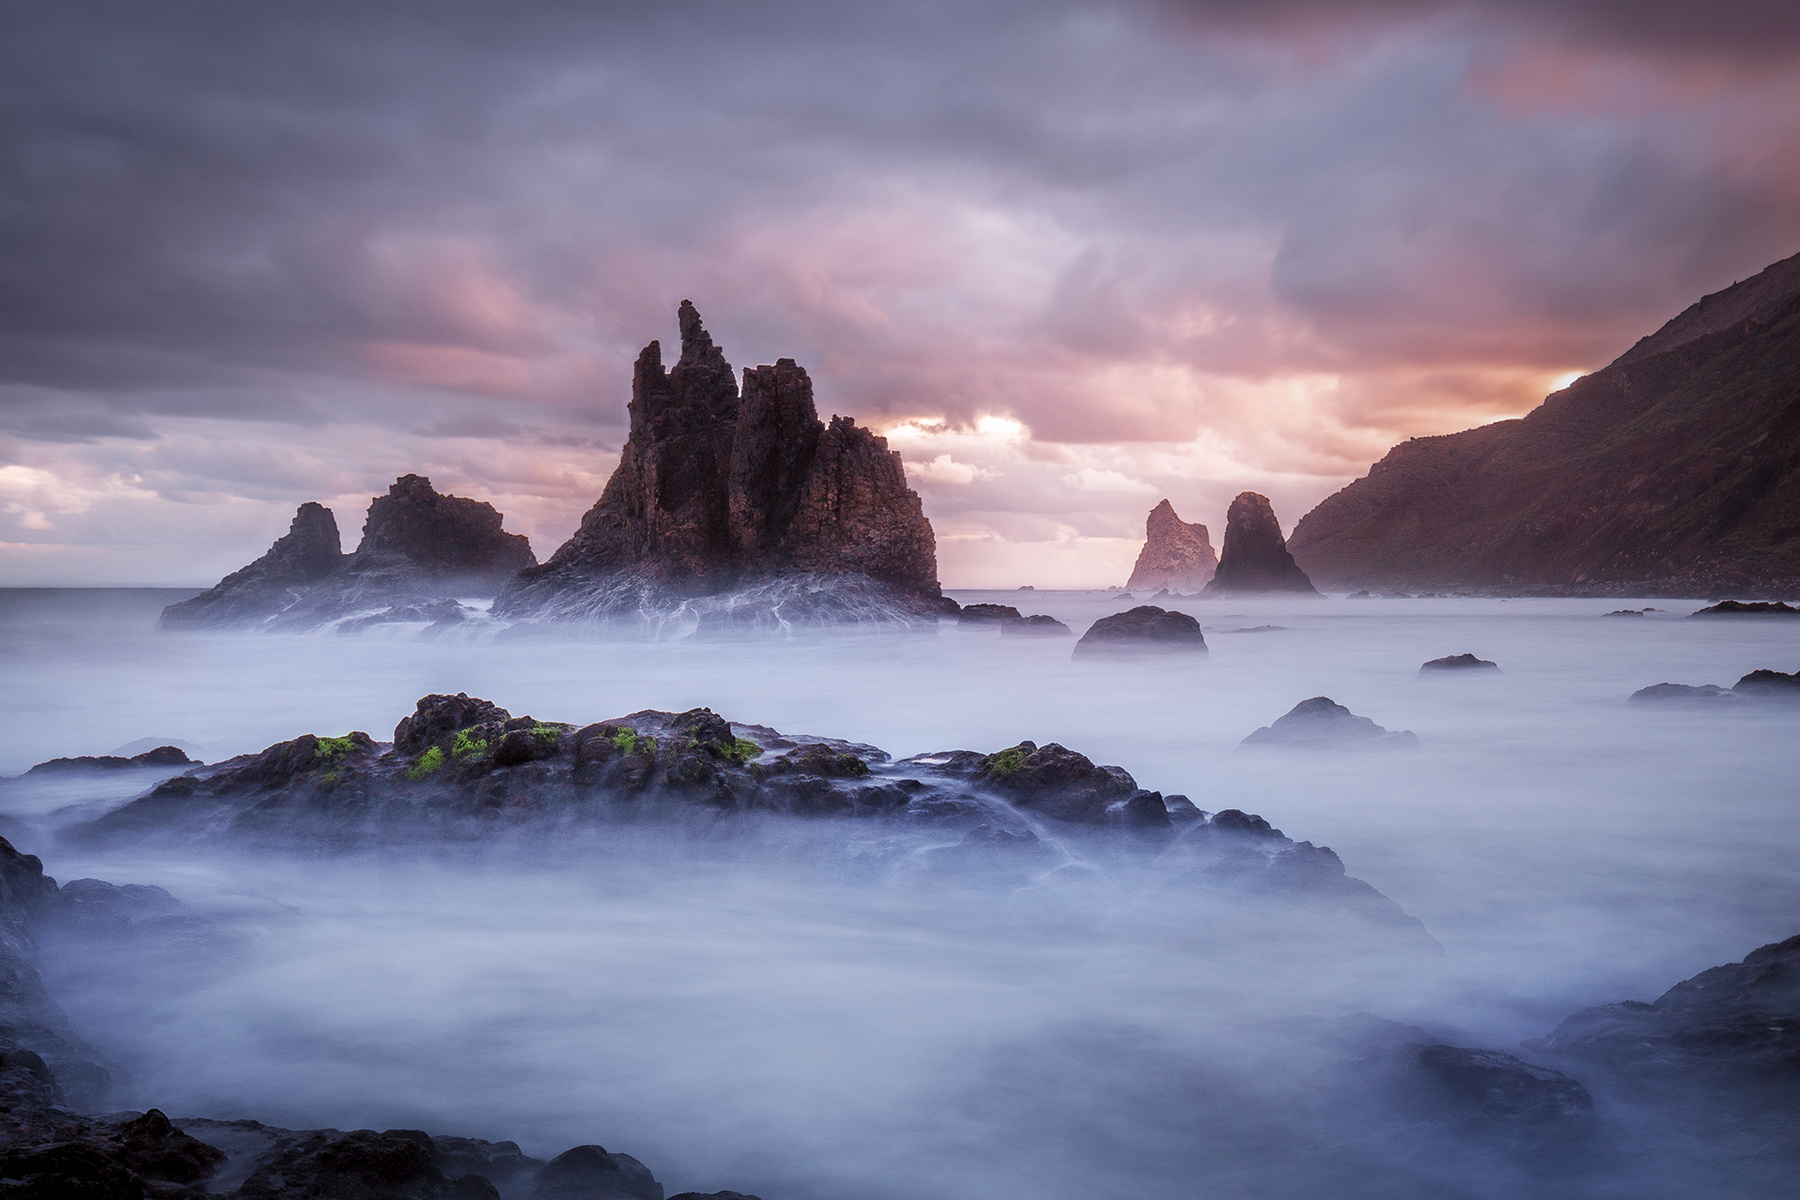 Сочные нотки рассвета Испания Бенихо рассвет океан выдержка скалы горы облака пляж берег